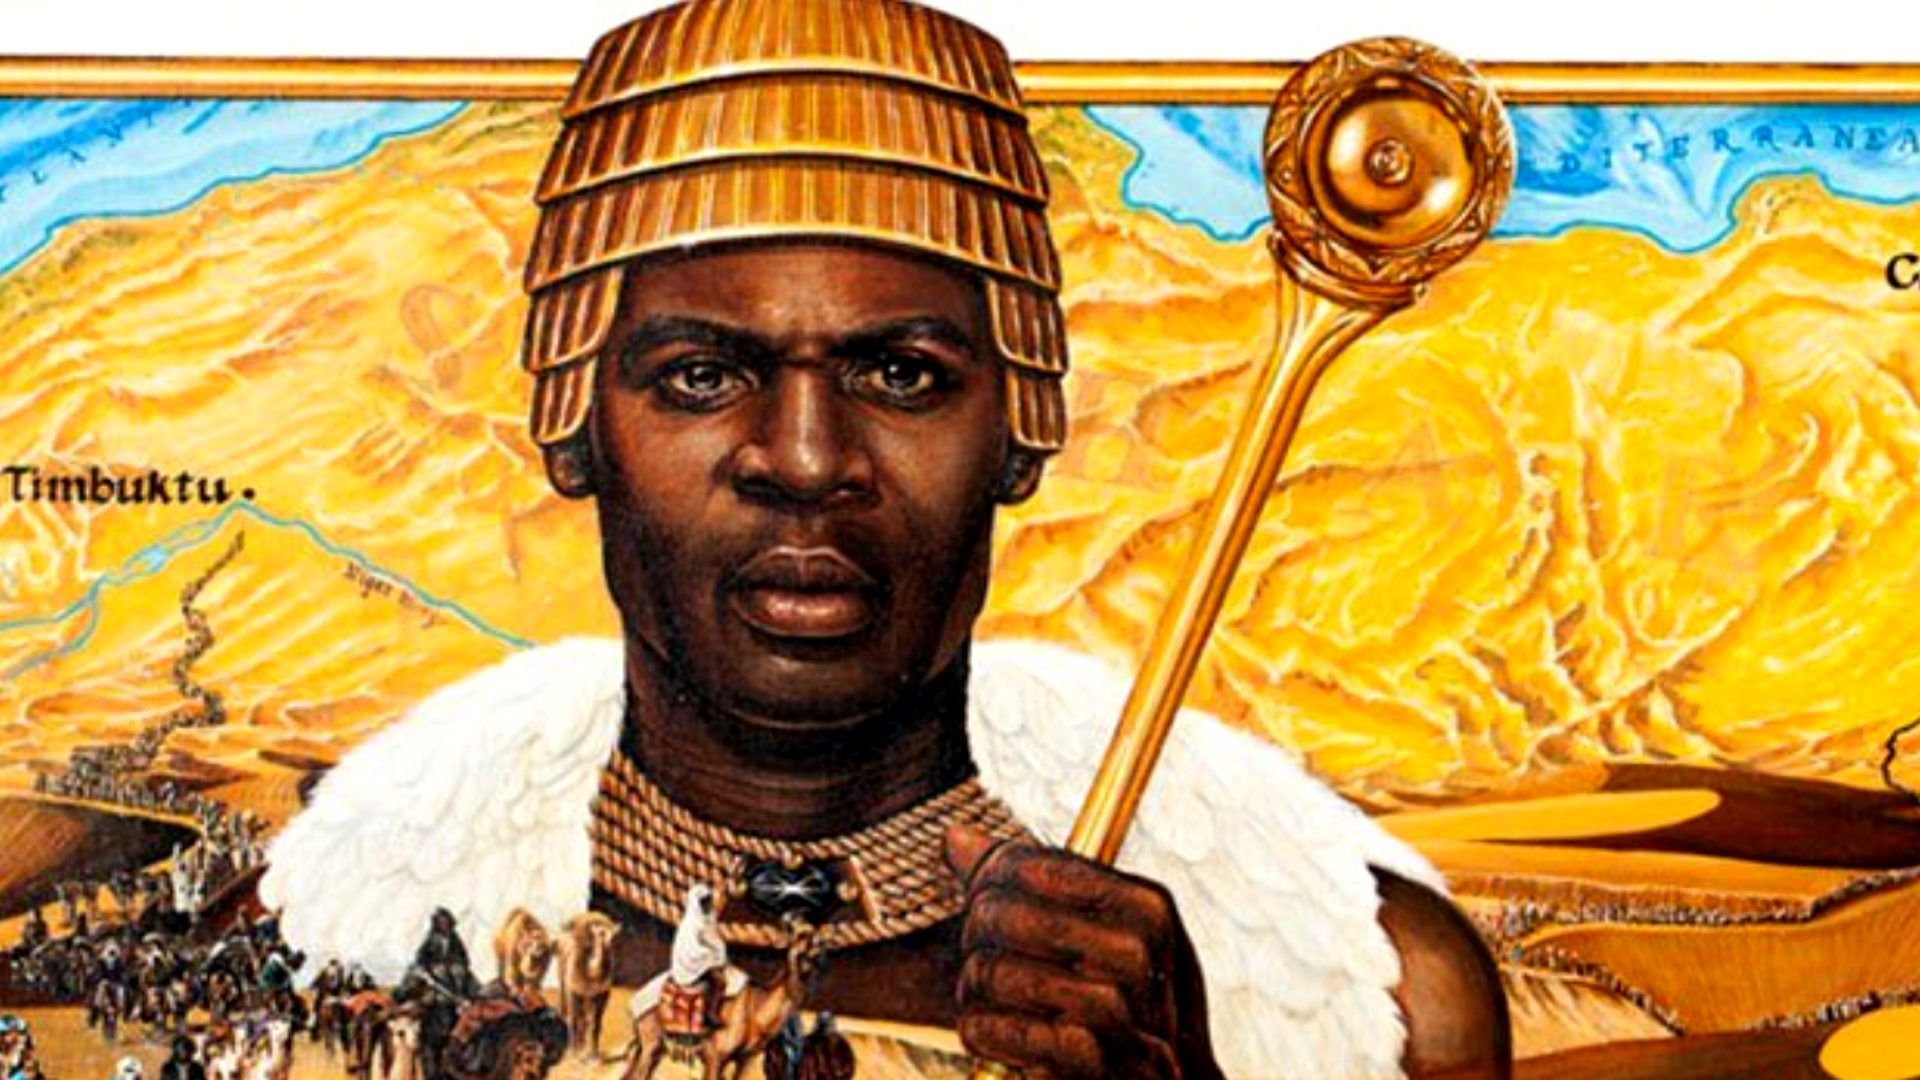 رغم أن أغنى رجل في التاريخ كان إفريقيا لماذا كان ذوو البشرة السمراء أكثر م ن عانى من العبودية والعنصرية منذ القدم